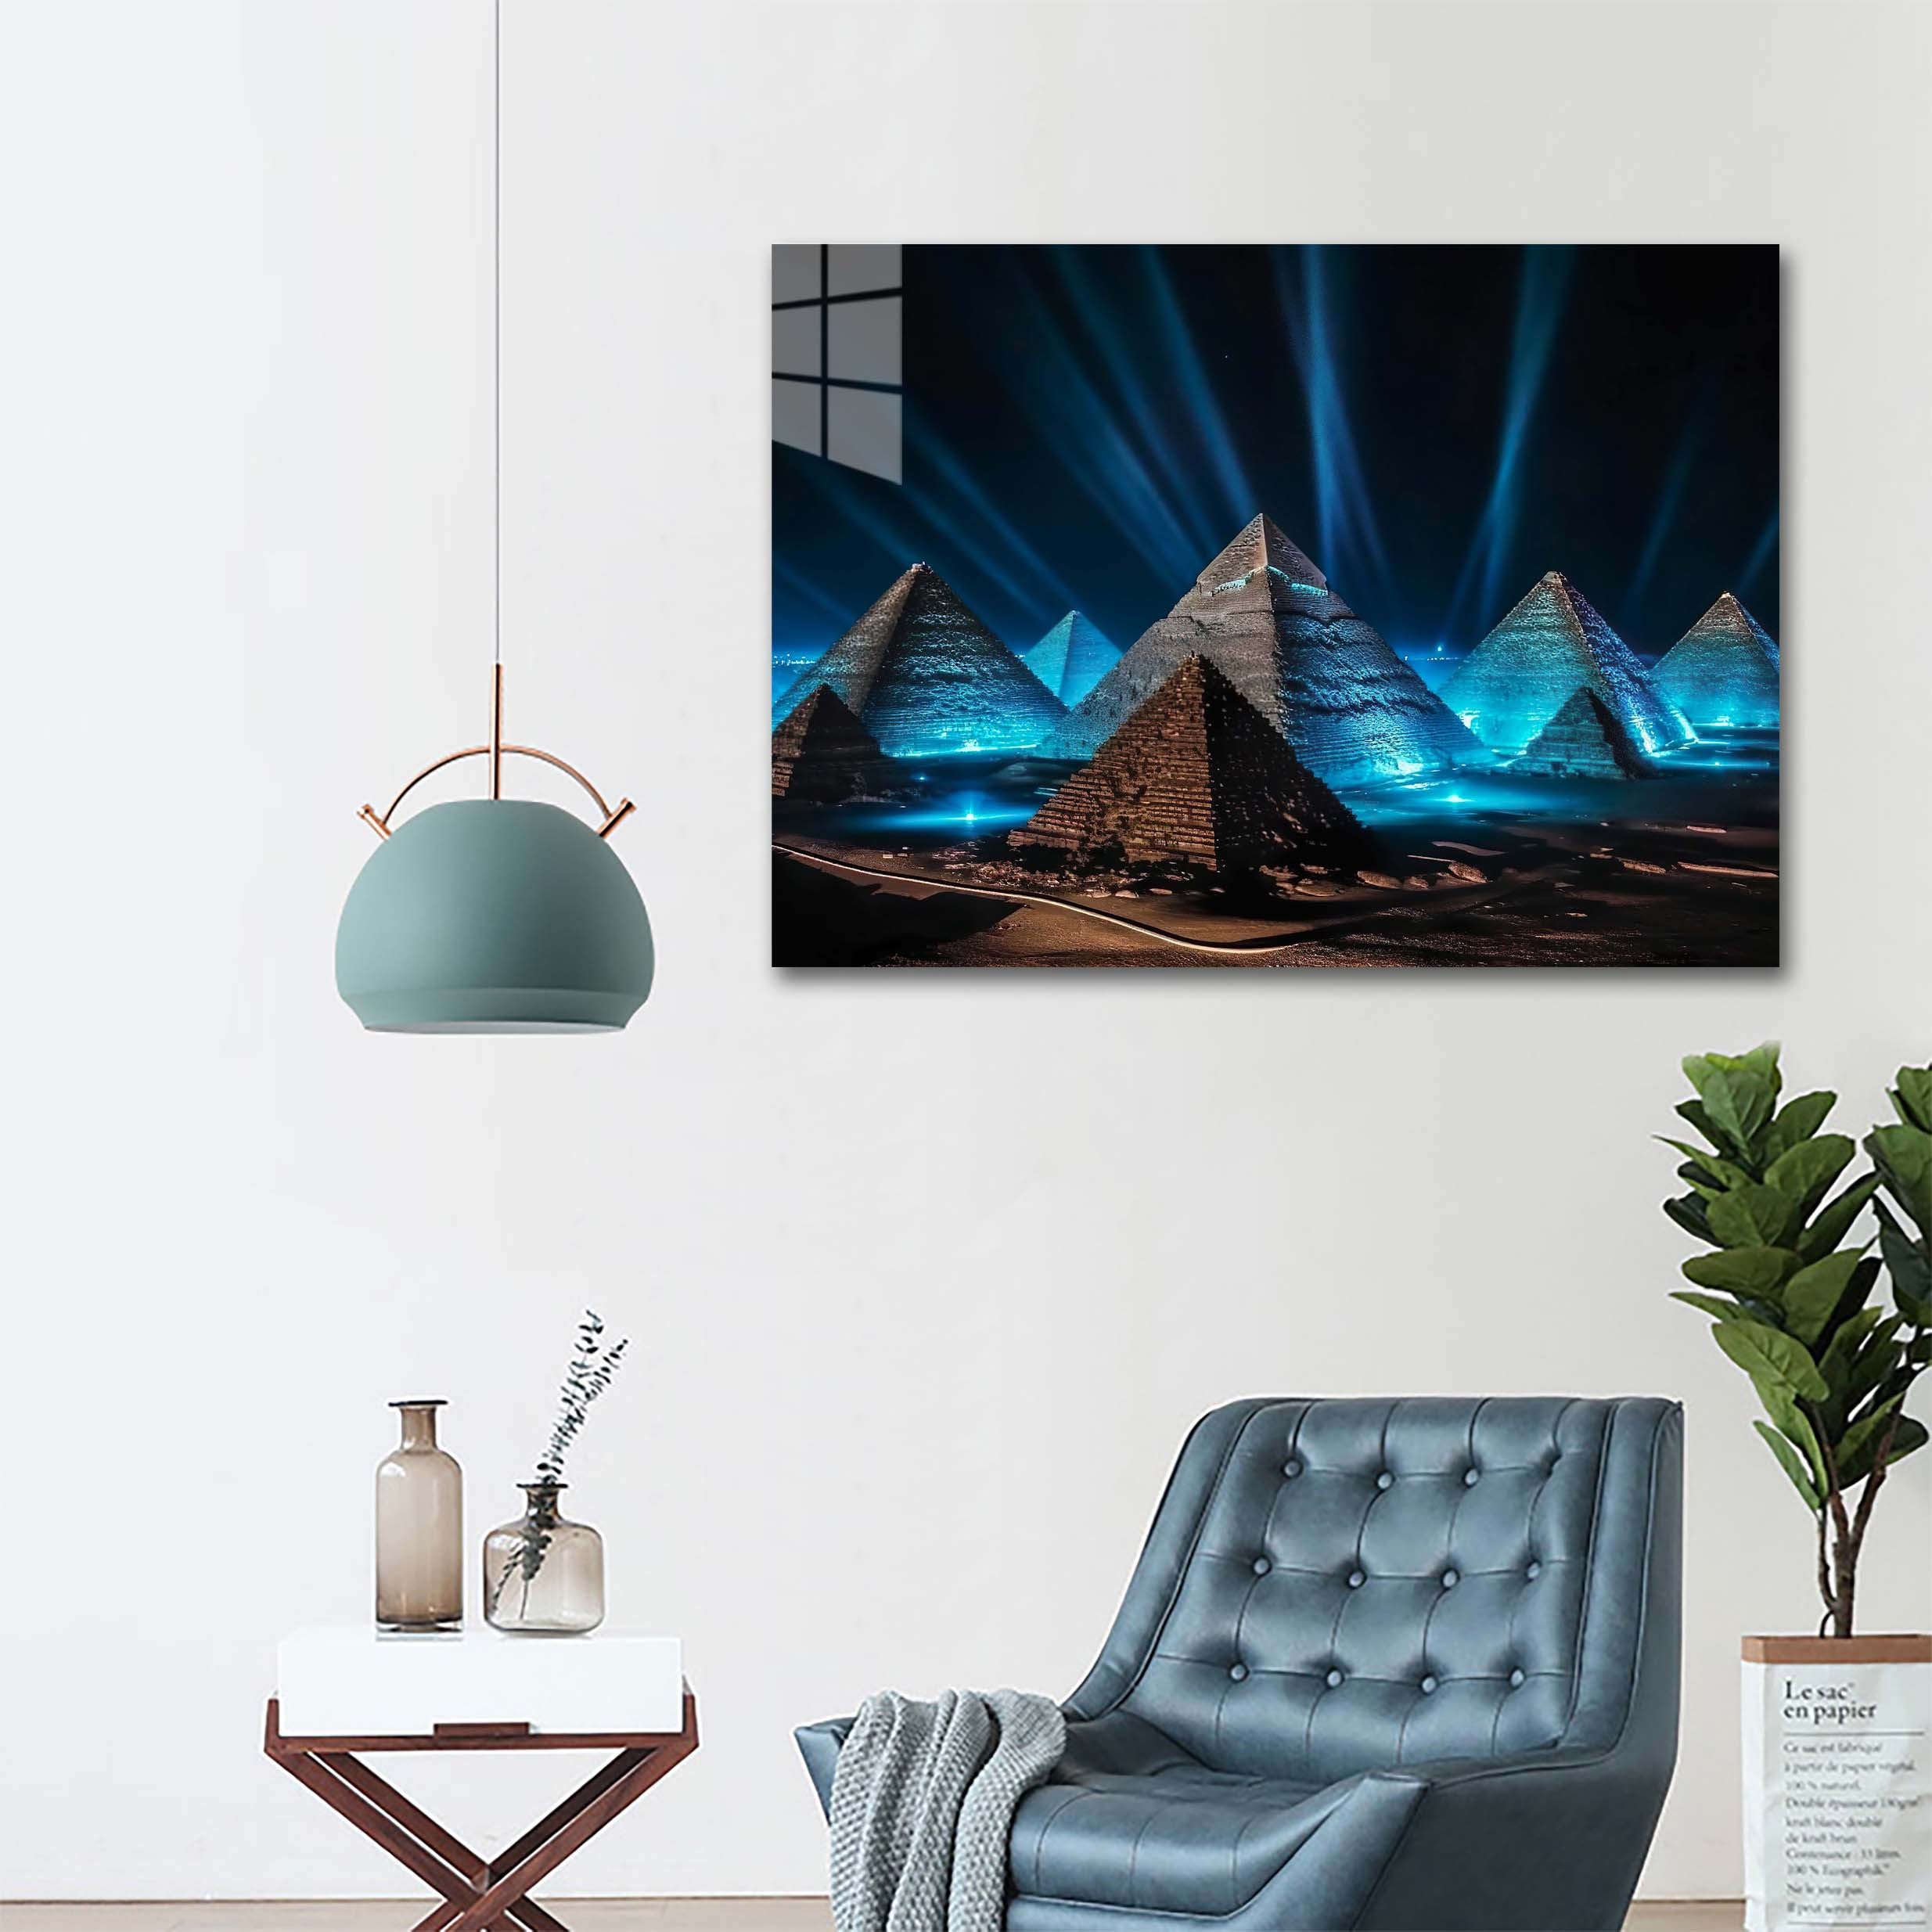 Blue Pyramids-designed by @Paragy